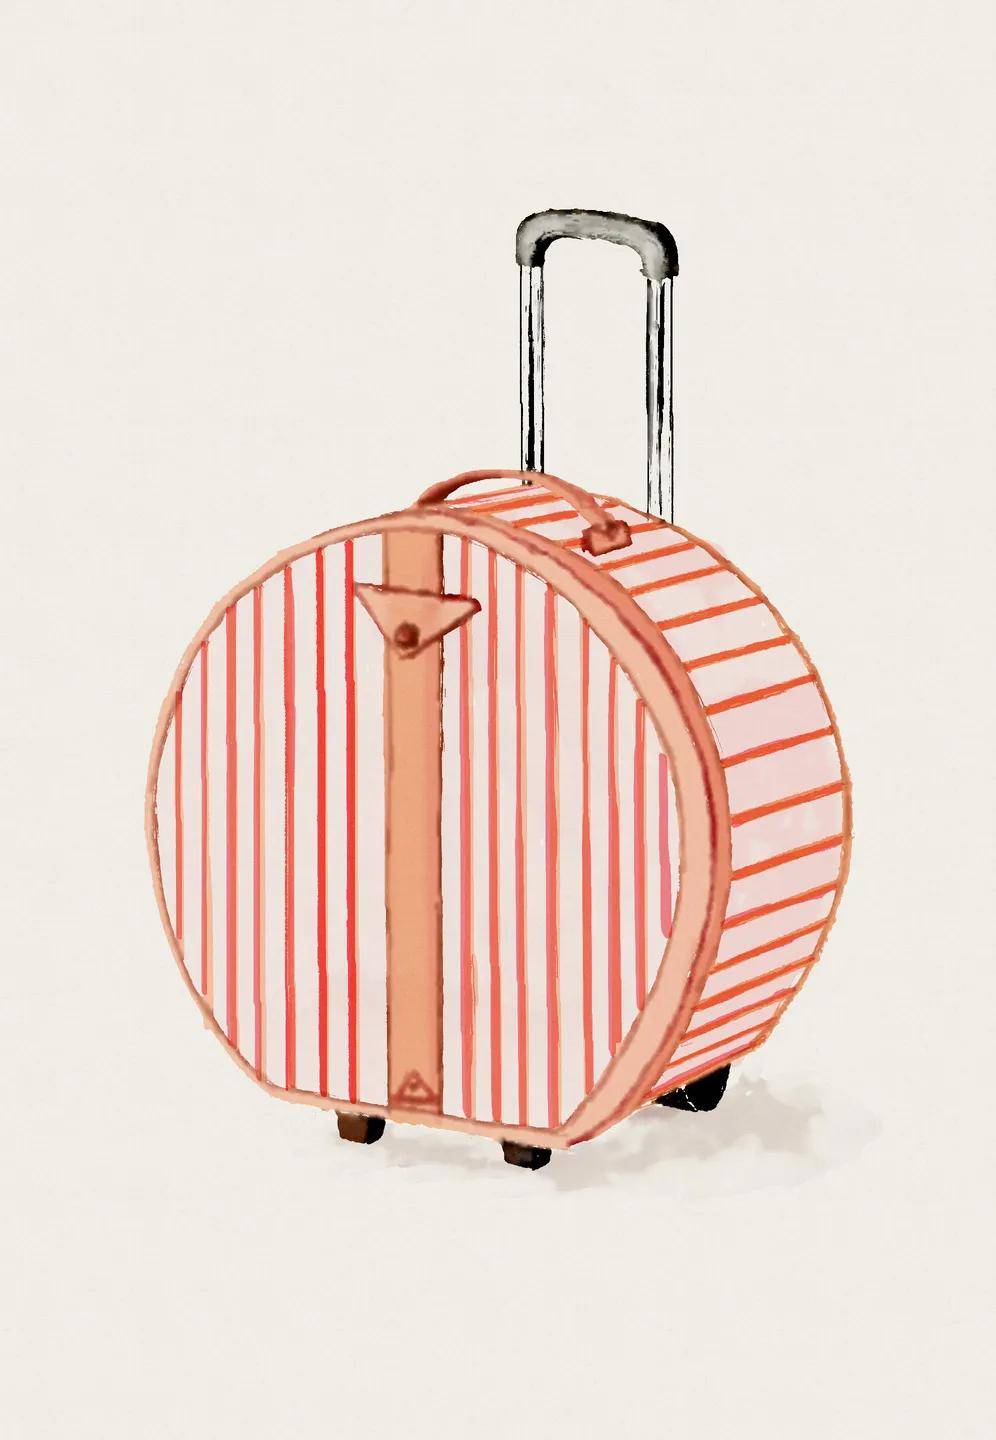 今天画的是一个粉色行李箱,可能很多女生很喜欢这个颜色.